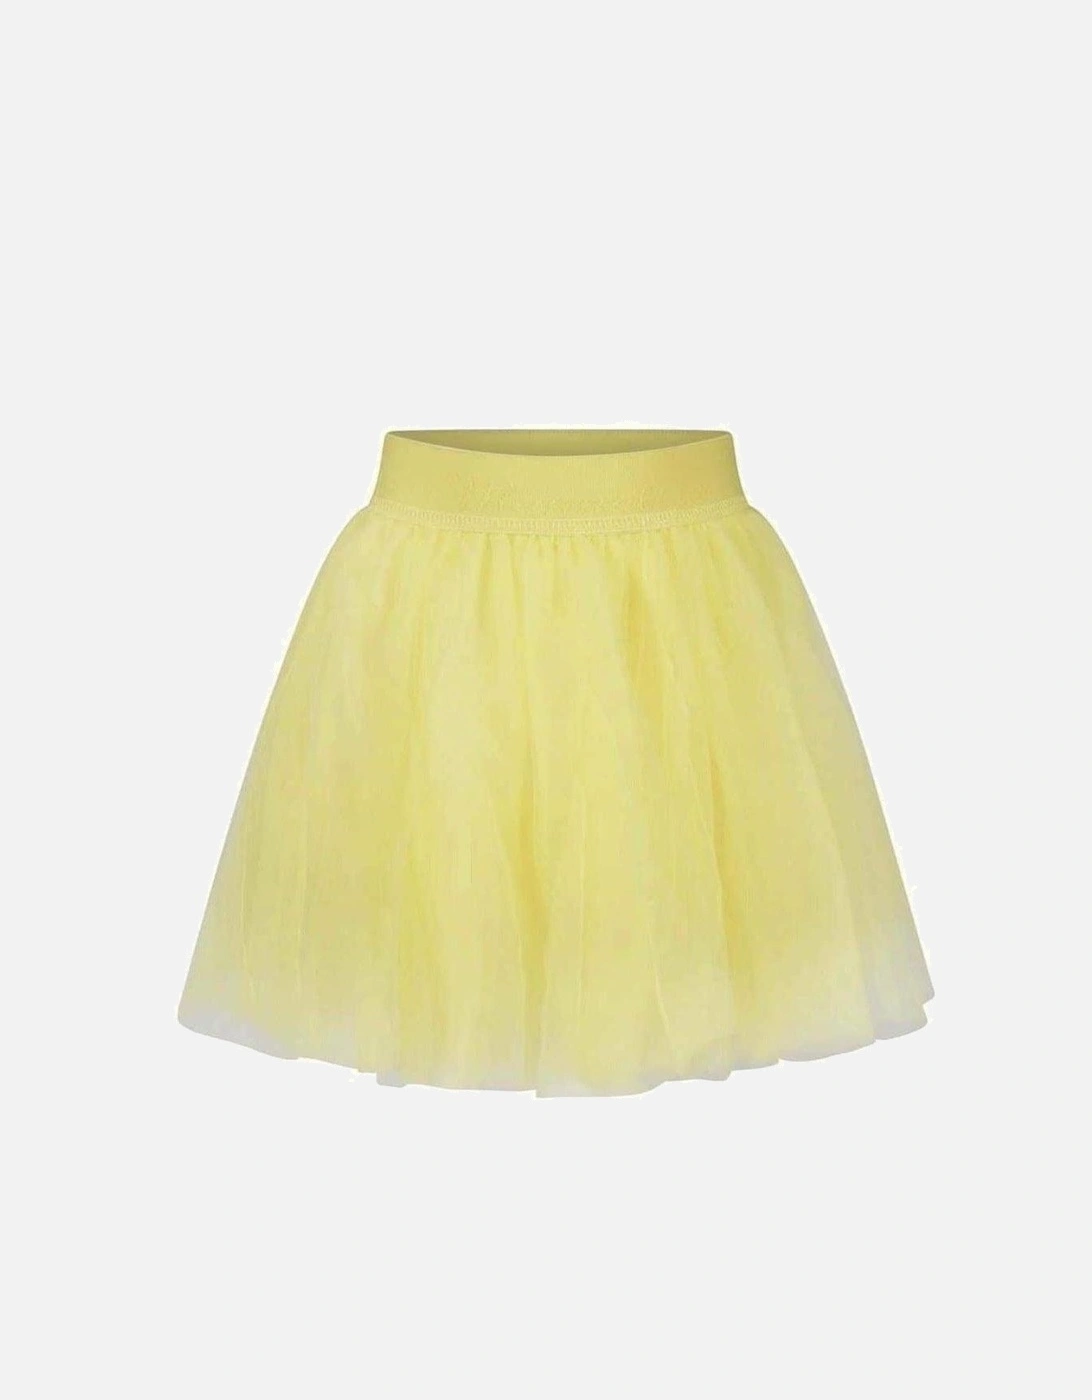 Girls Yellow Skirt, 2 of 1